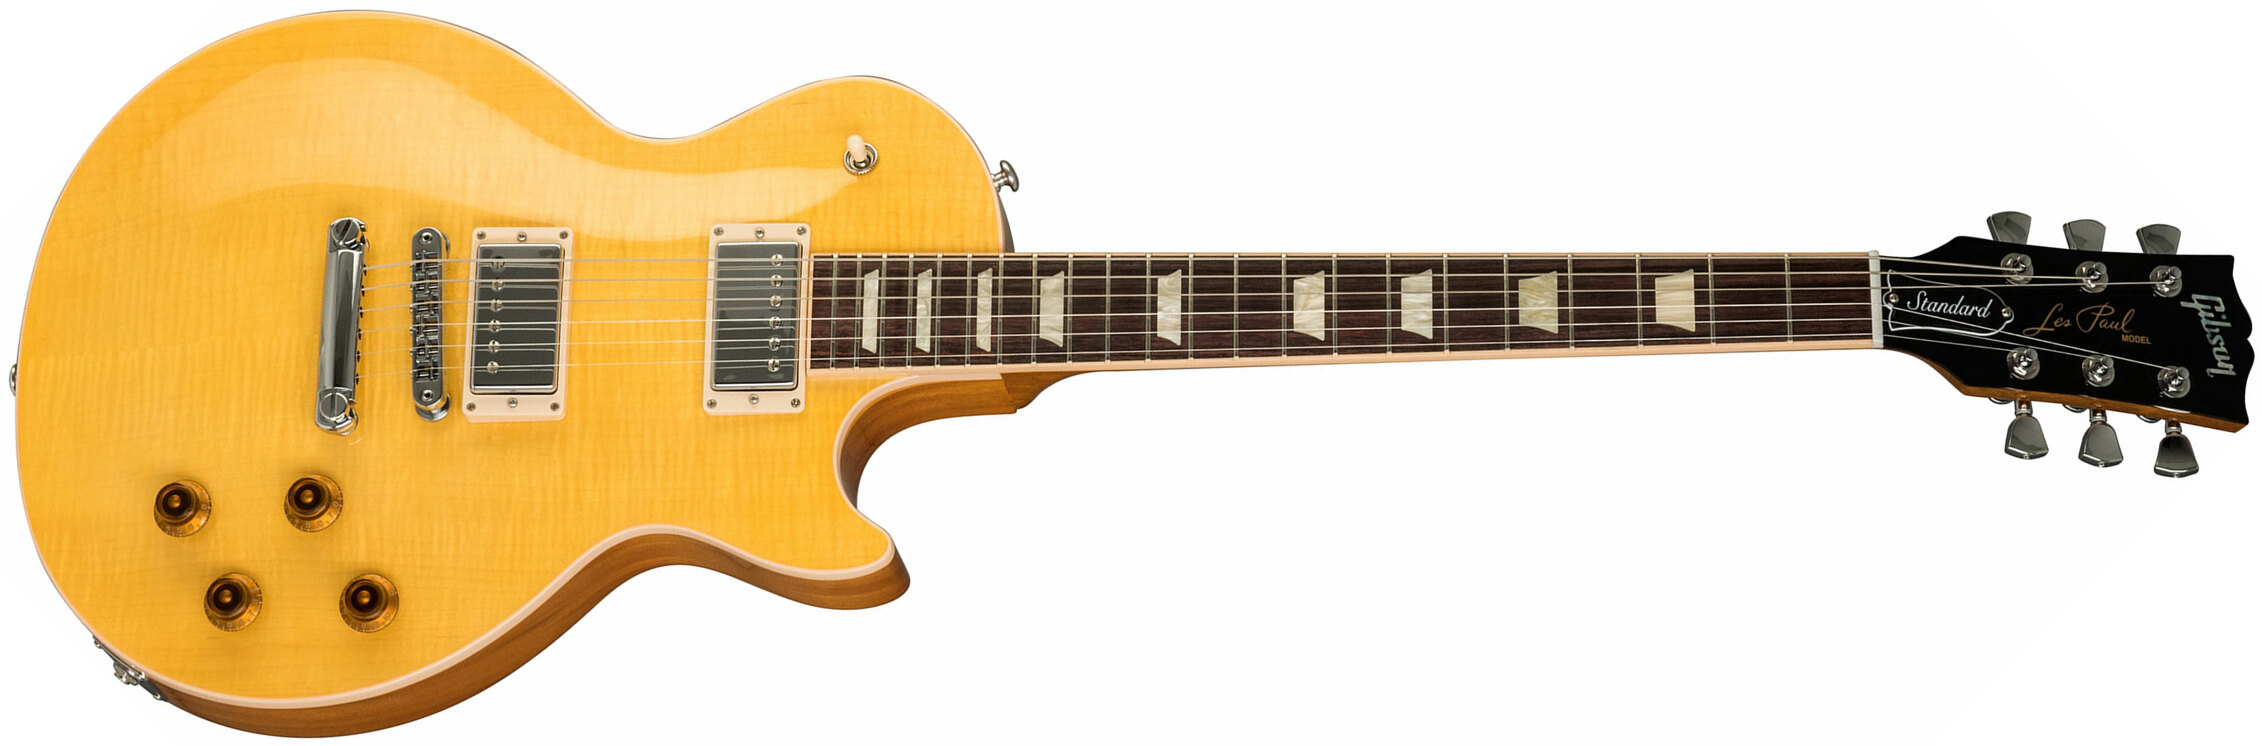 Gibson Les Paul Standard 2h Ht Rw - Trans Amber - Guitarra eléctrica de corte único. - Main picture